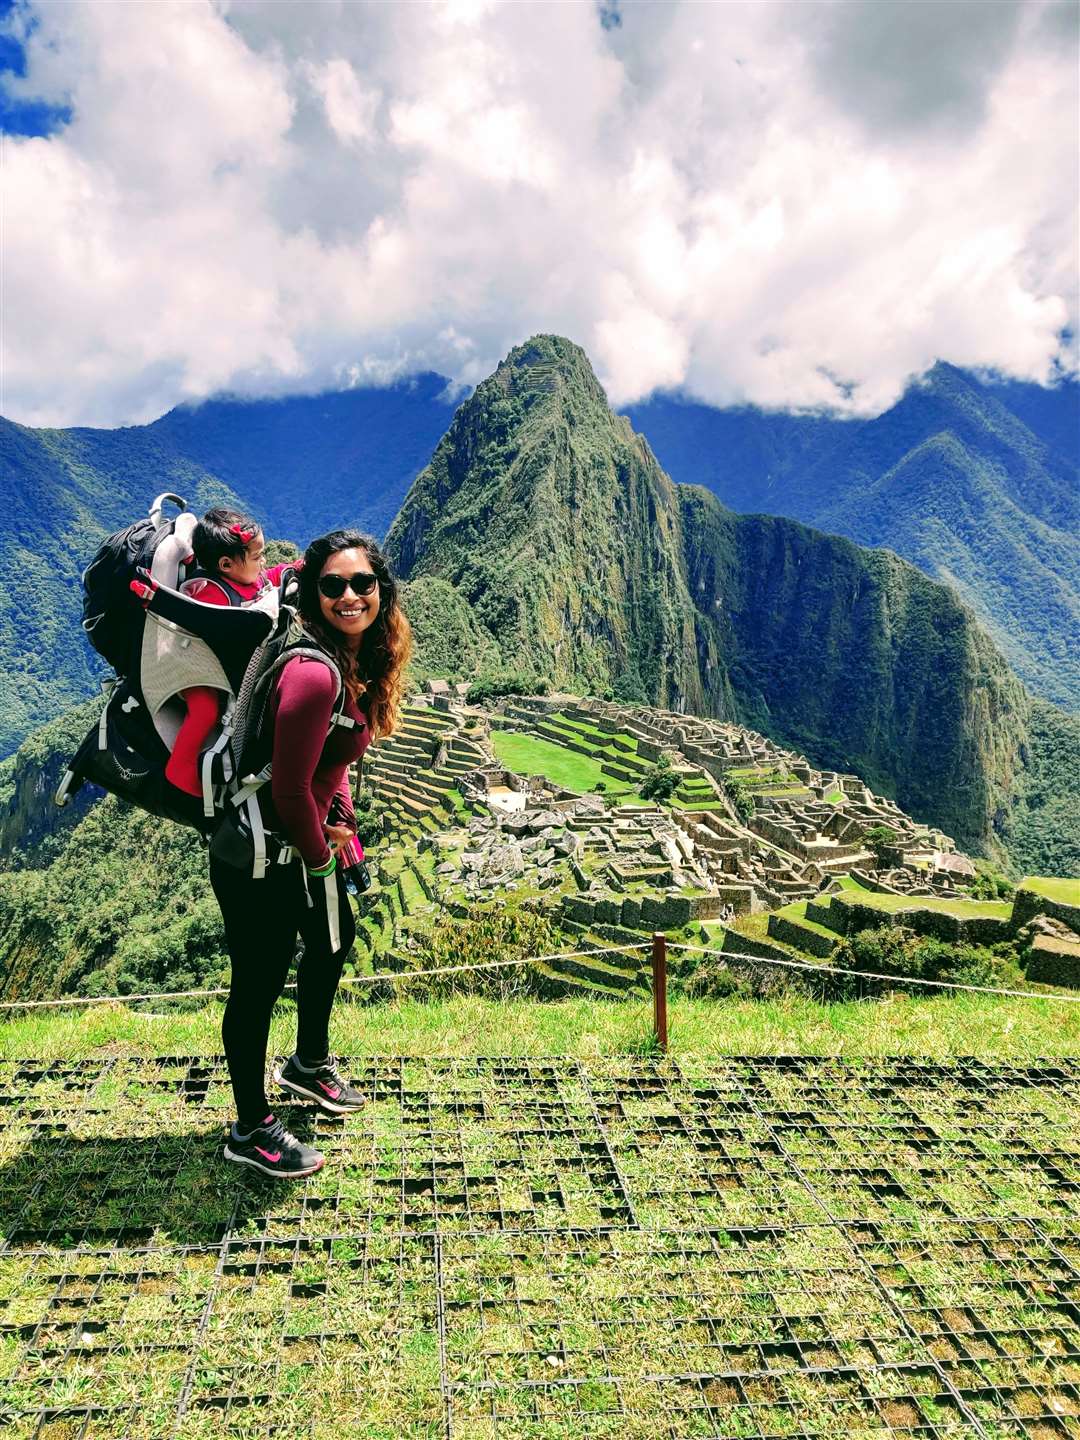 Shereen and her daughter in Peru at Machu Picchu